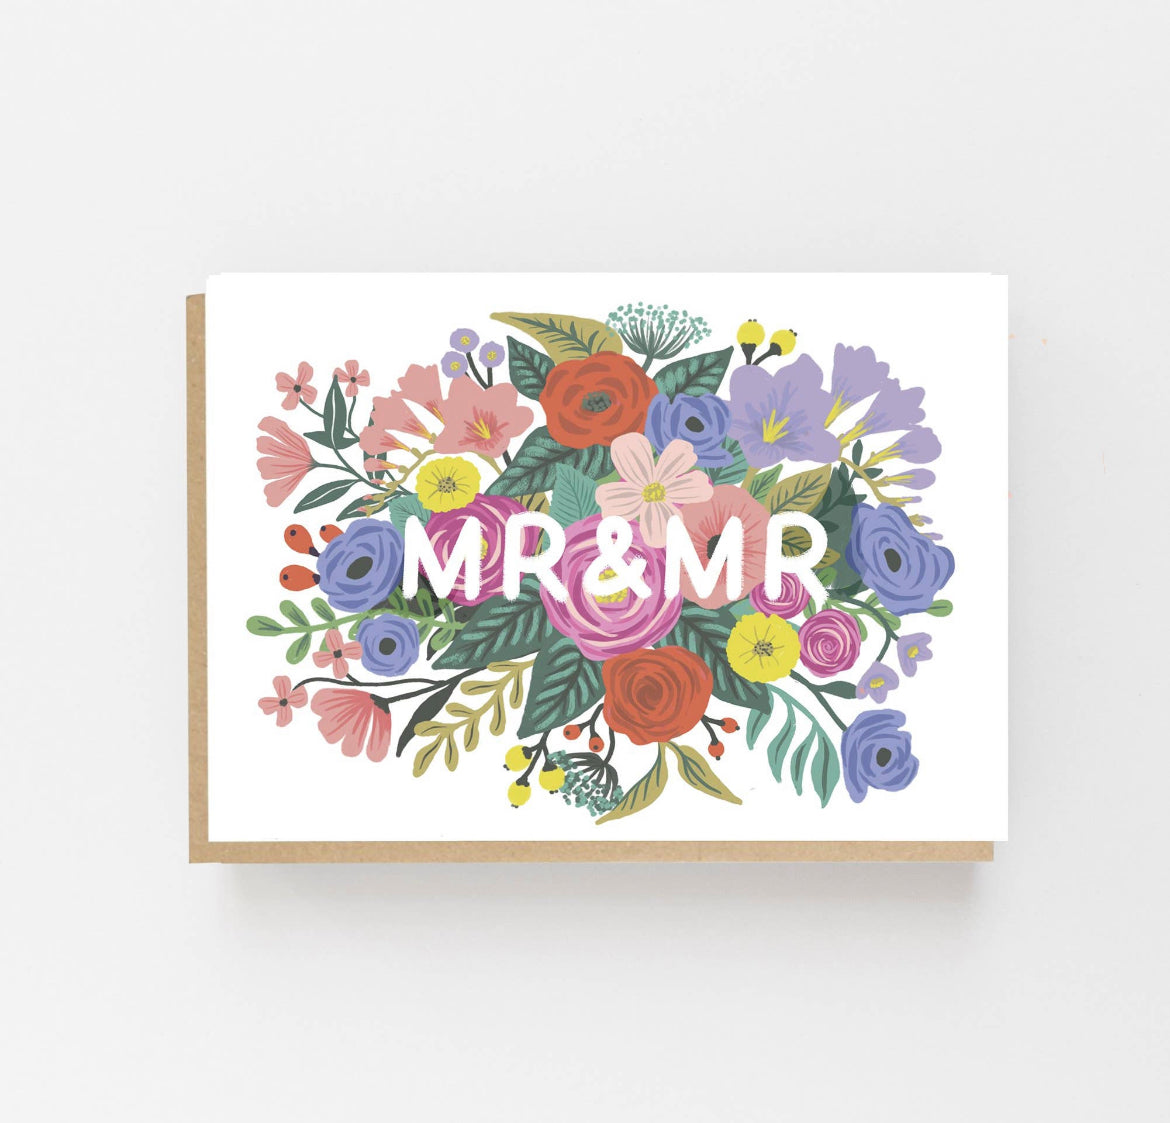 Mr & Mr Wedding Card